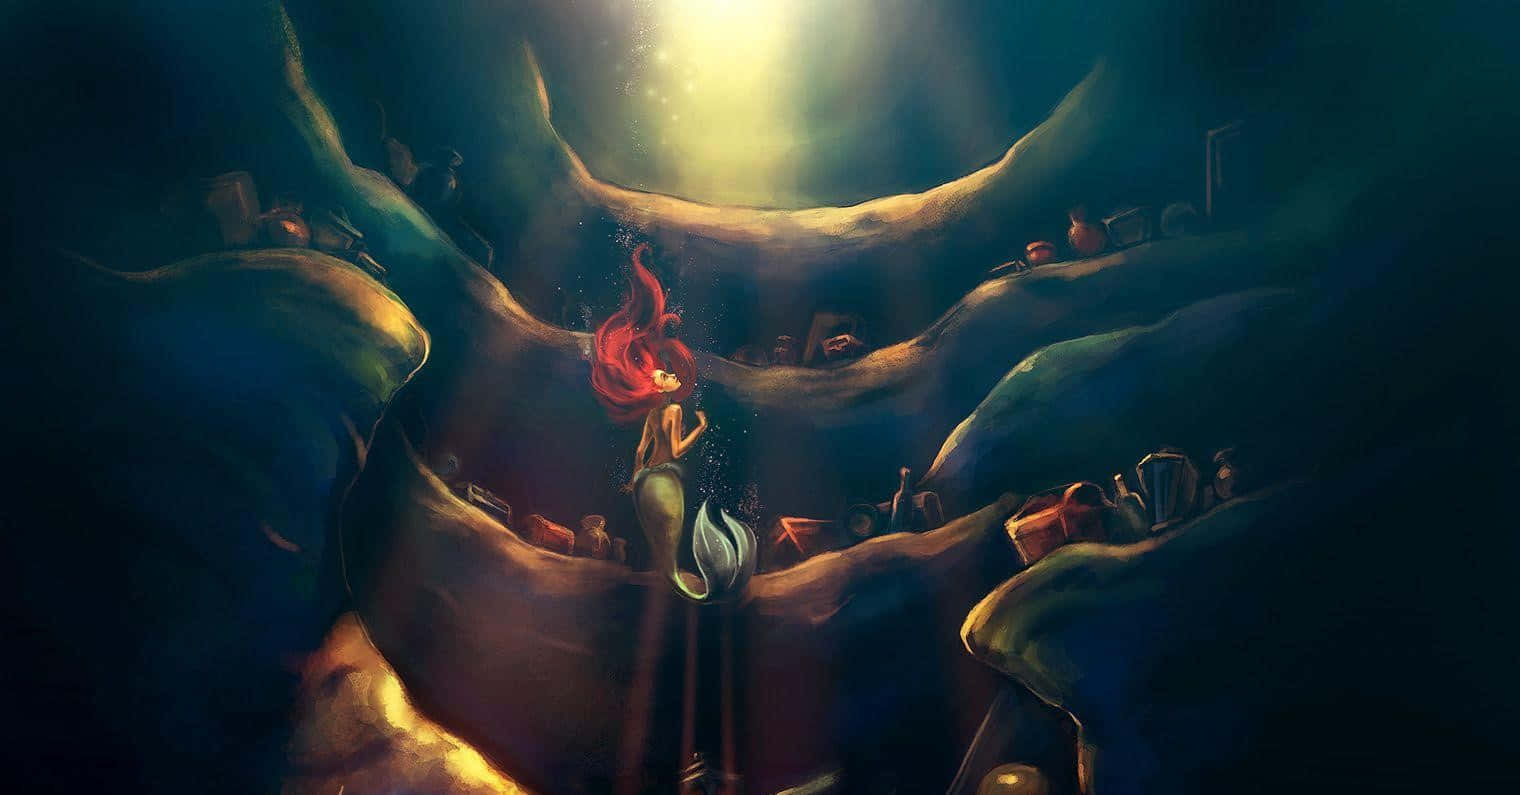 Unmomento Mágico De La Sirenita De Disney Fondo de pantalla